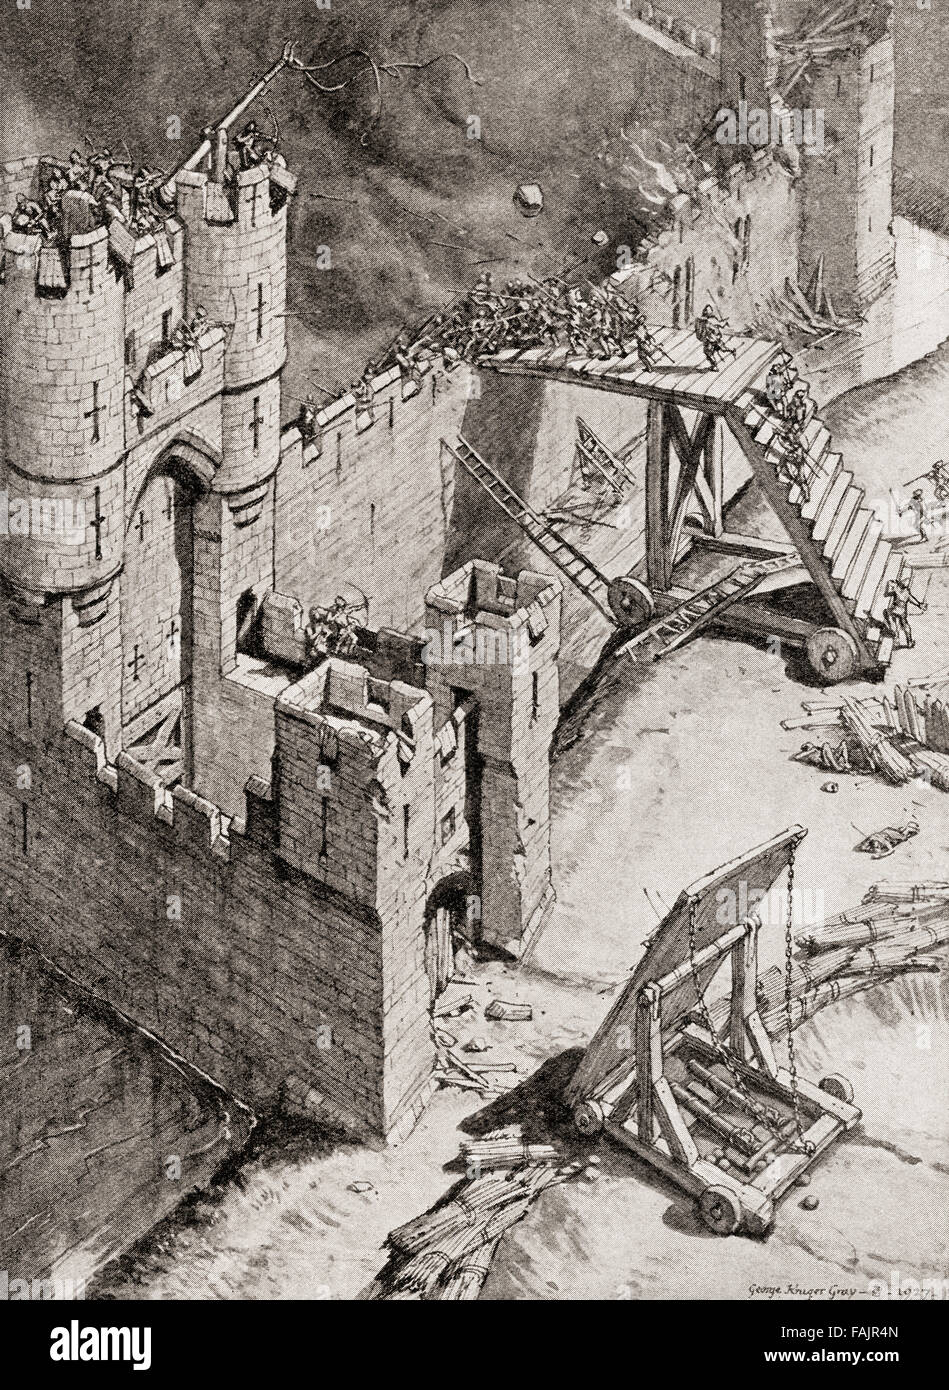 Le siège d'un château au 14e siècle. Un corps à corps sur une échelle échelle lutte projetés contre les remparts, tandis que la garnison lancer des pierres par une catapulte. Banque D'Images